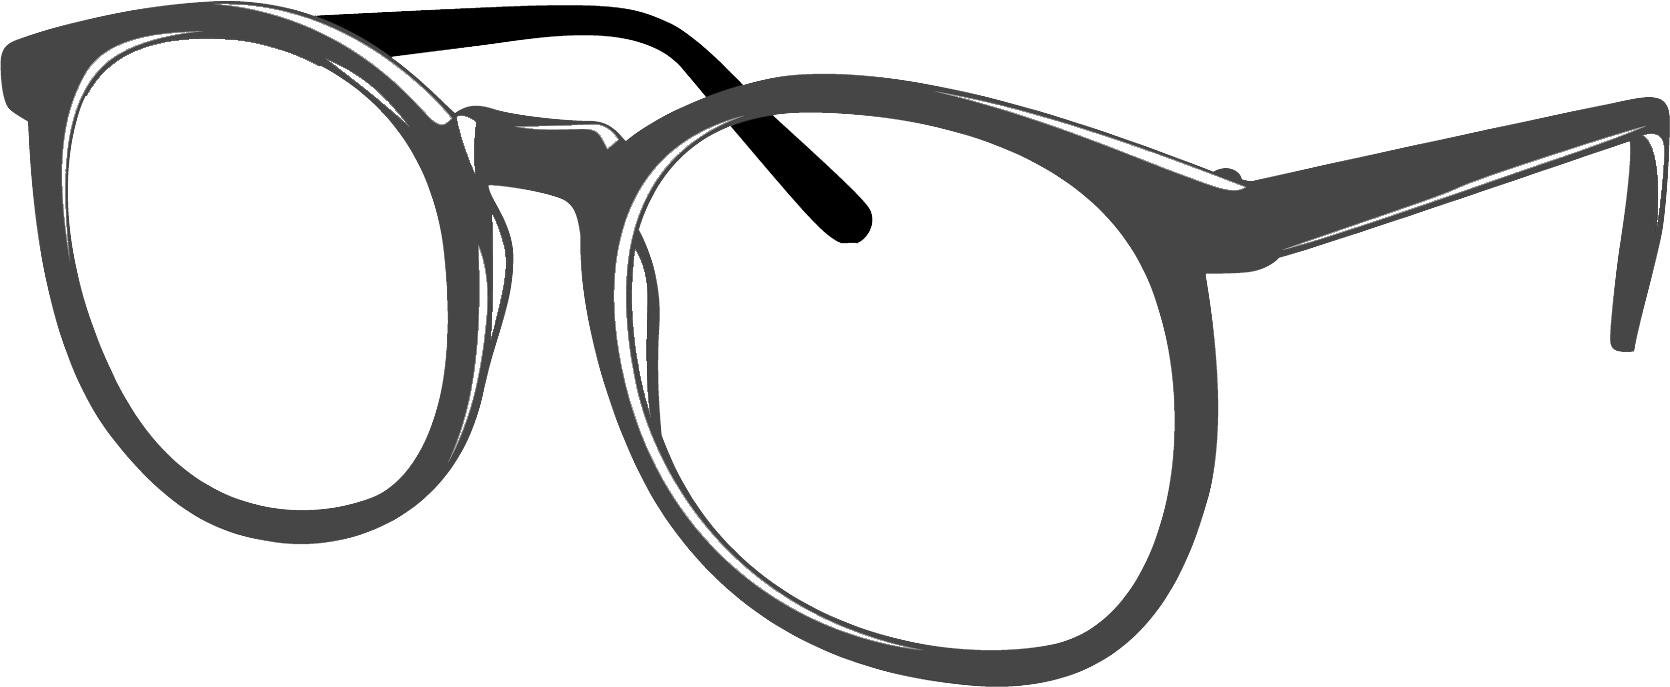 Eye glasses clip art